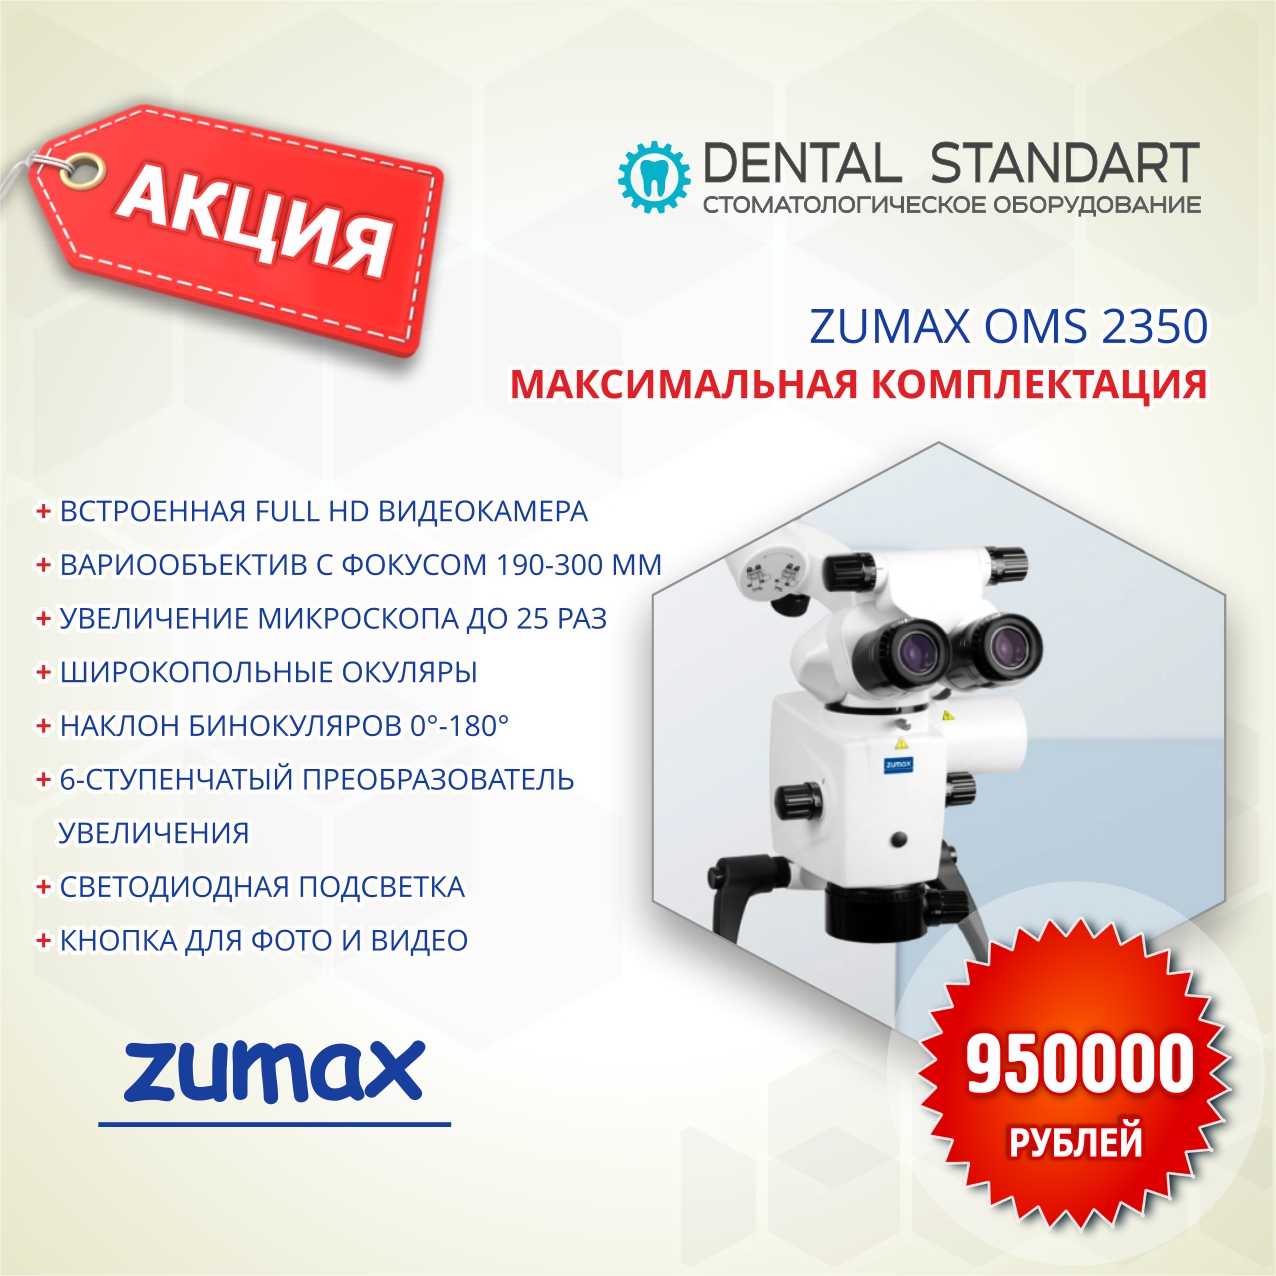 Микроскопы для стоматологии ZUMAX